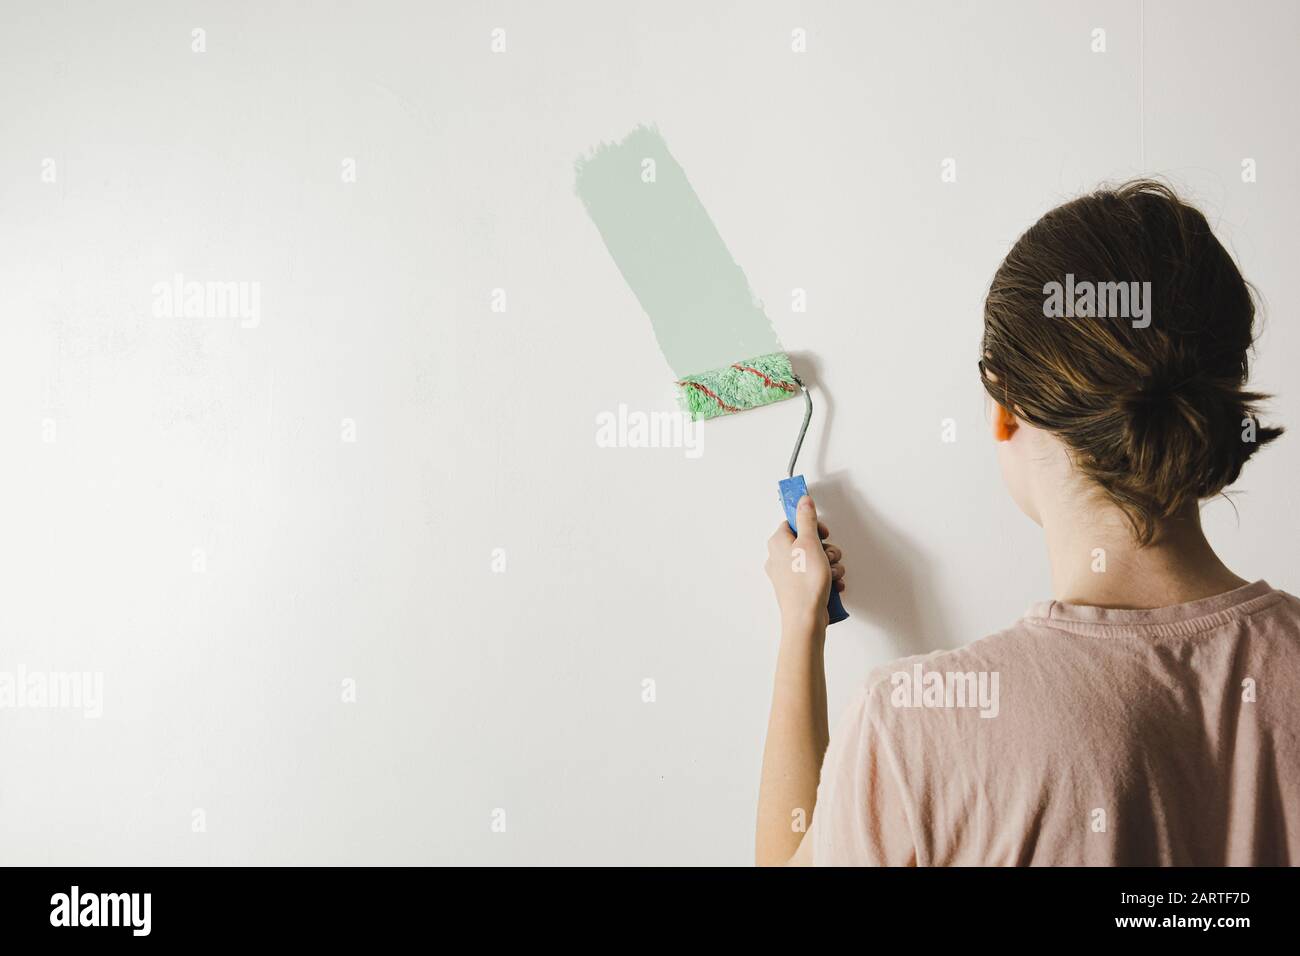 Frau malt eine Hauswand um. Umdekoration, Reparatur, Neubeginn oder Umzug in ein neues Hauskonzept Stockfoto